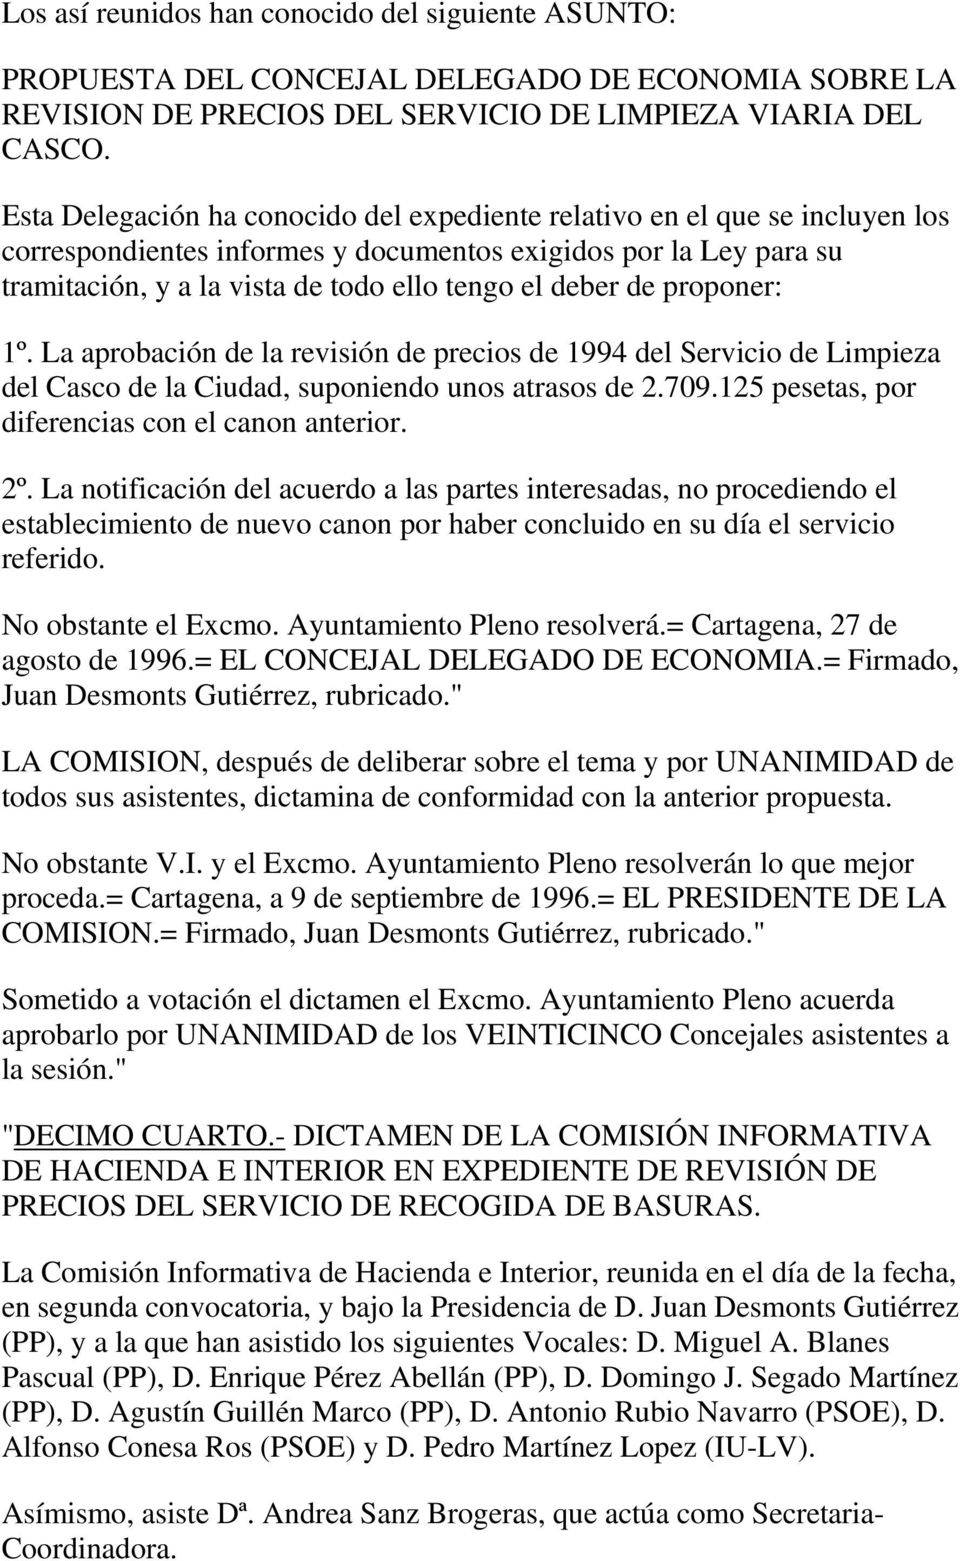 de proponer: 1º. La aprobación de la revisión de precios de 1994 del Servicio de Limpieza del Casco de la Ciudad, suponiendo unos atrasos de 2.709.125 pesetas, por diferencias con el canon anterior.